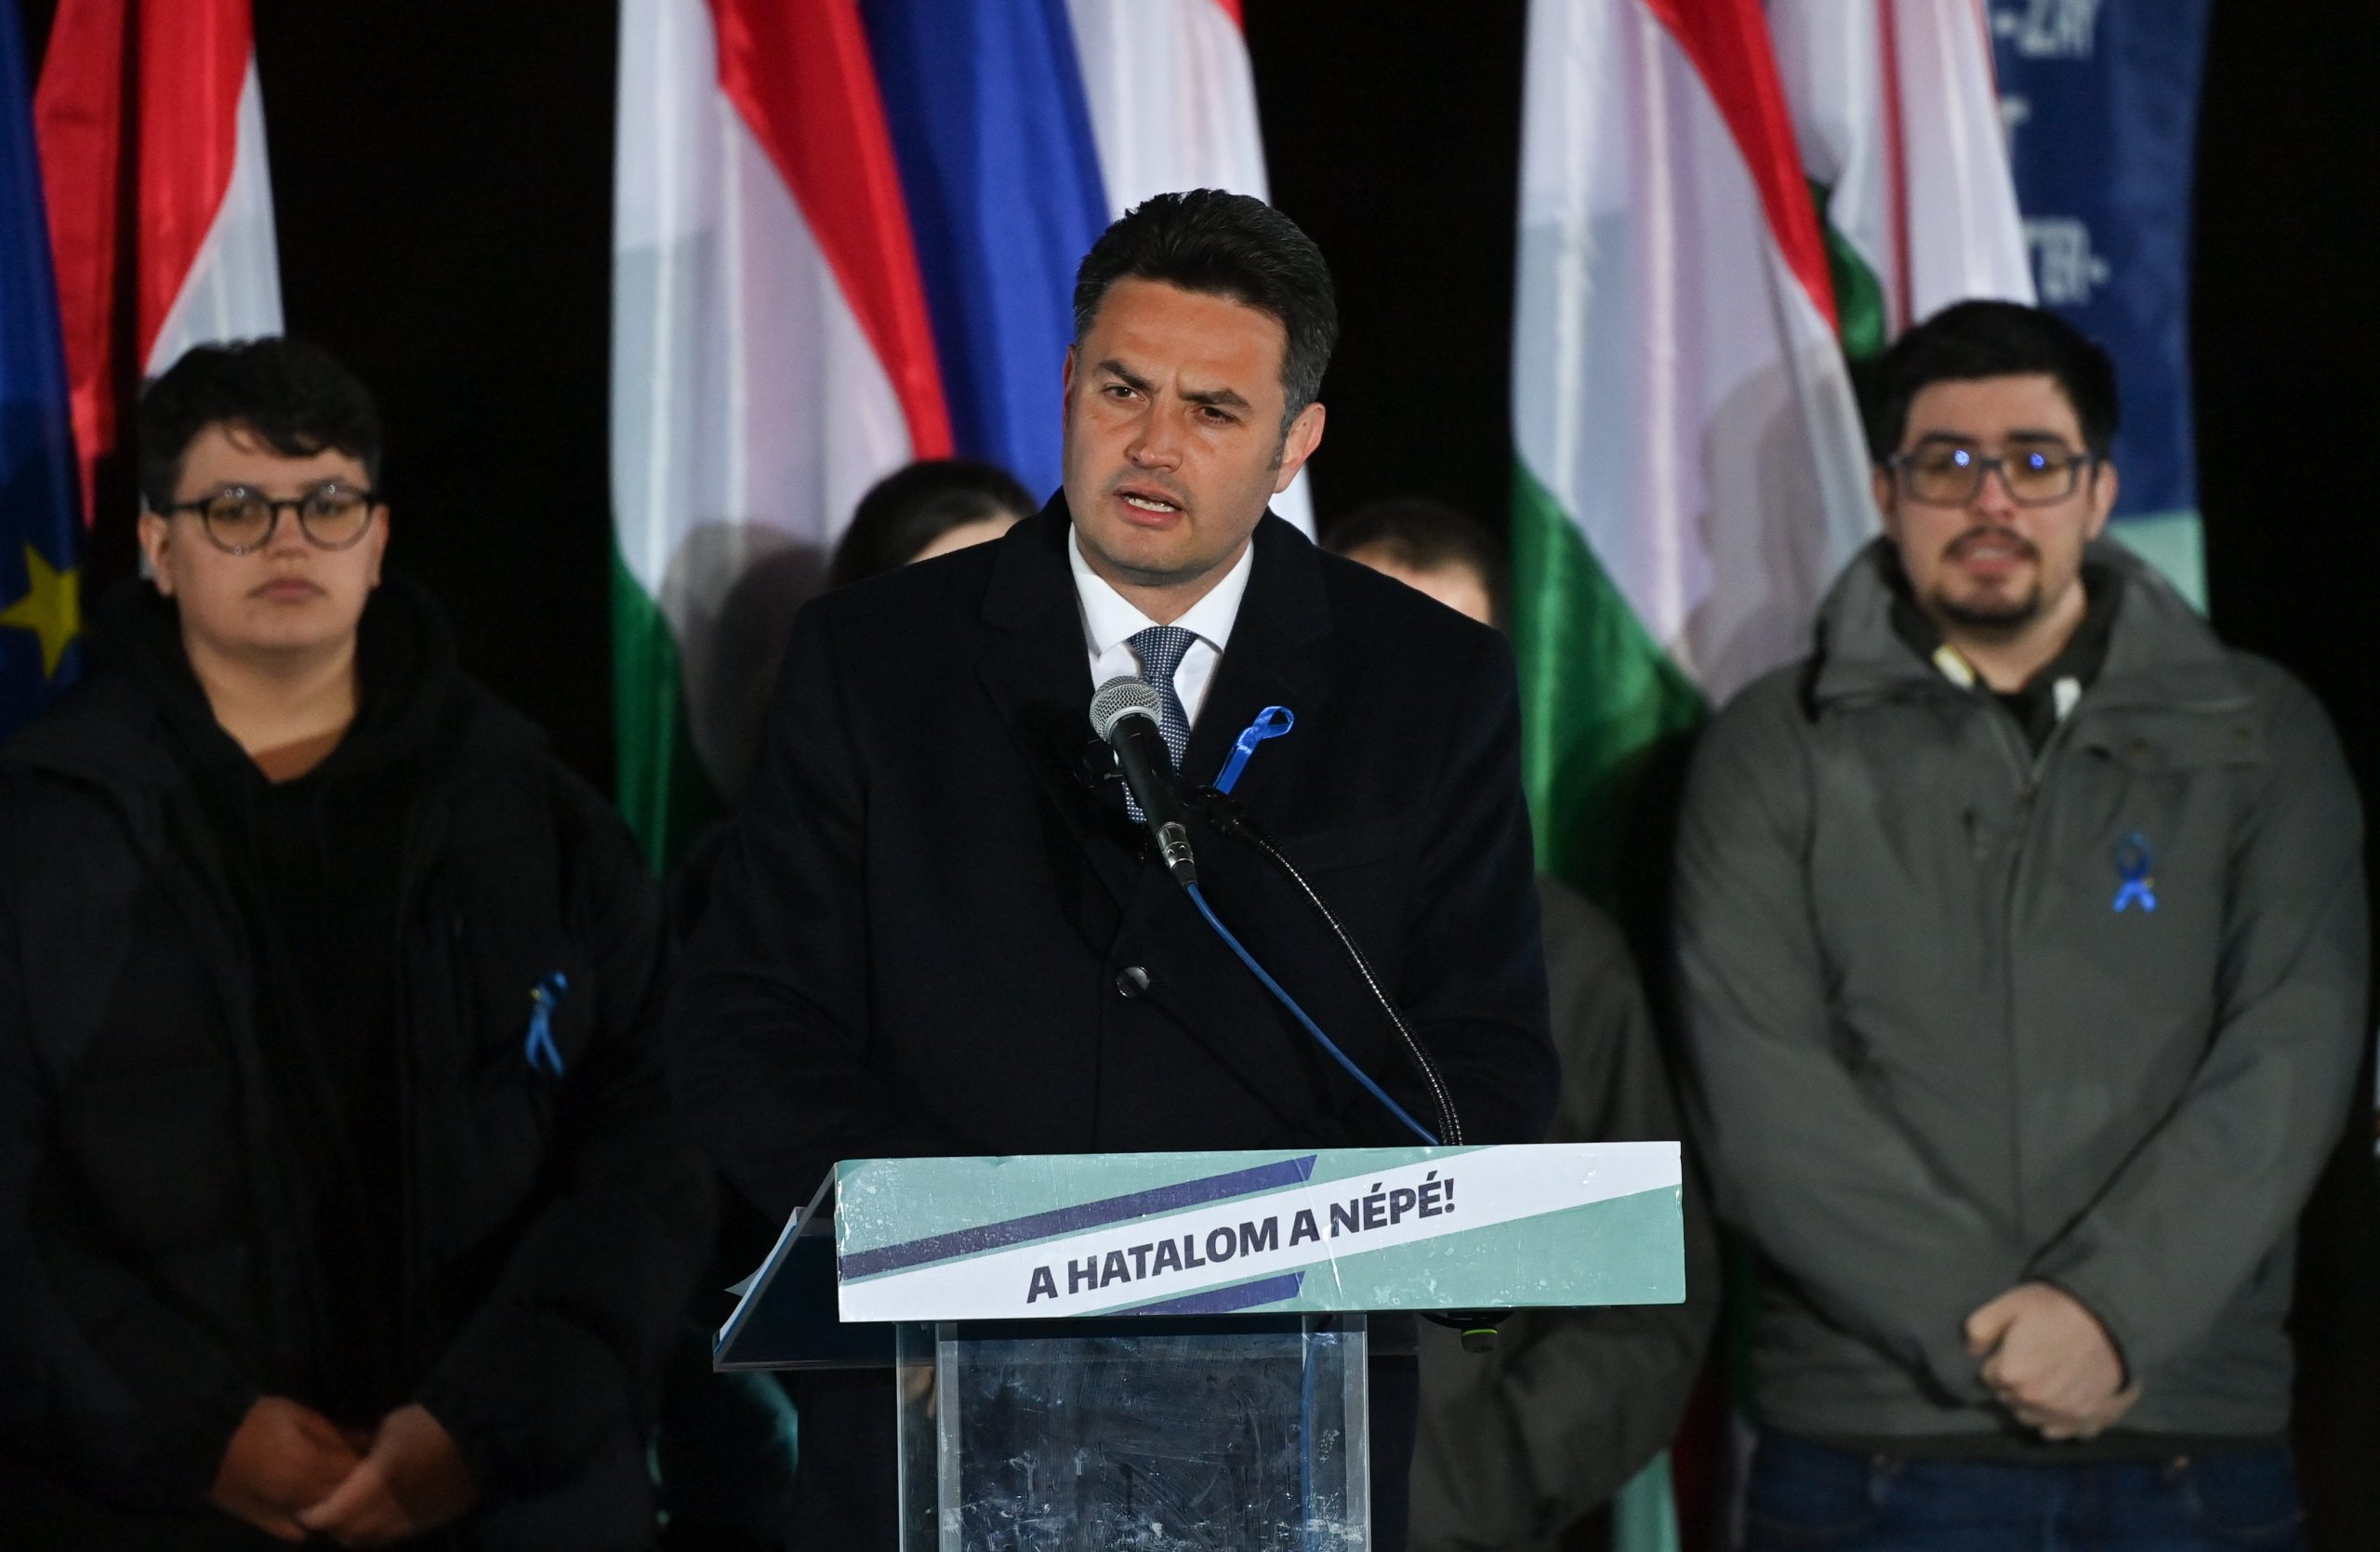 Márki-Zay Acknowledges Victory of Orbán and Fidesz